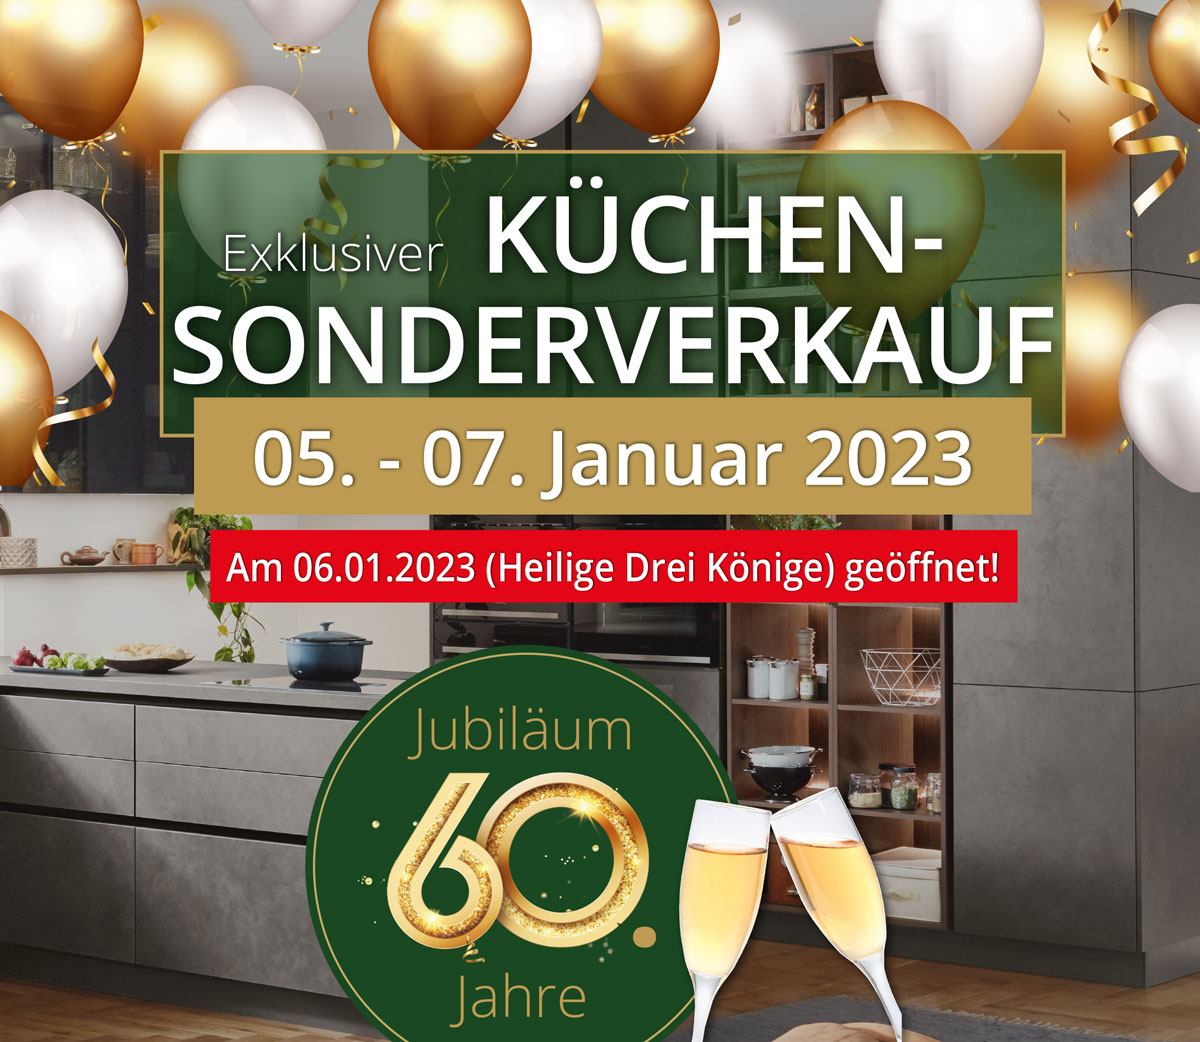 Exklusiver Küchen-Sonderverkauf vom 05.- 07. Januar 2023